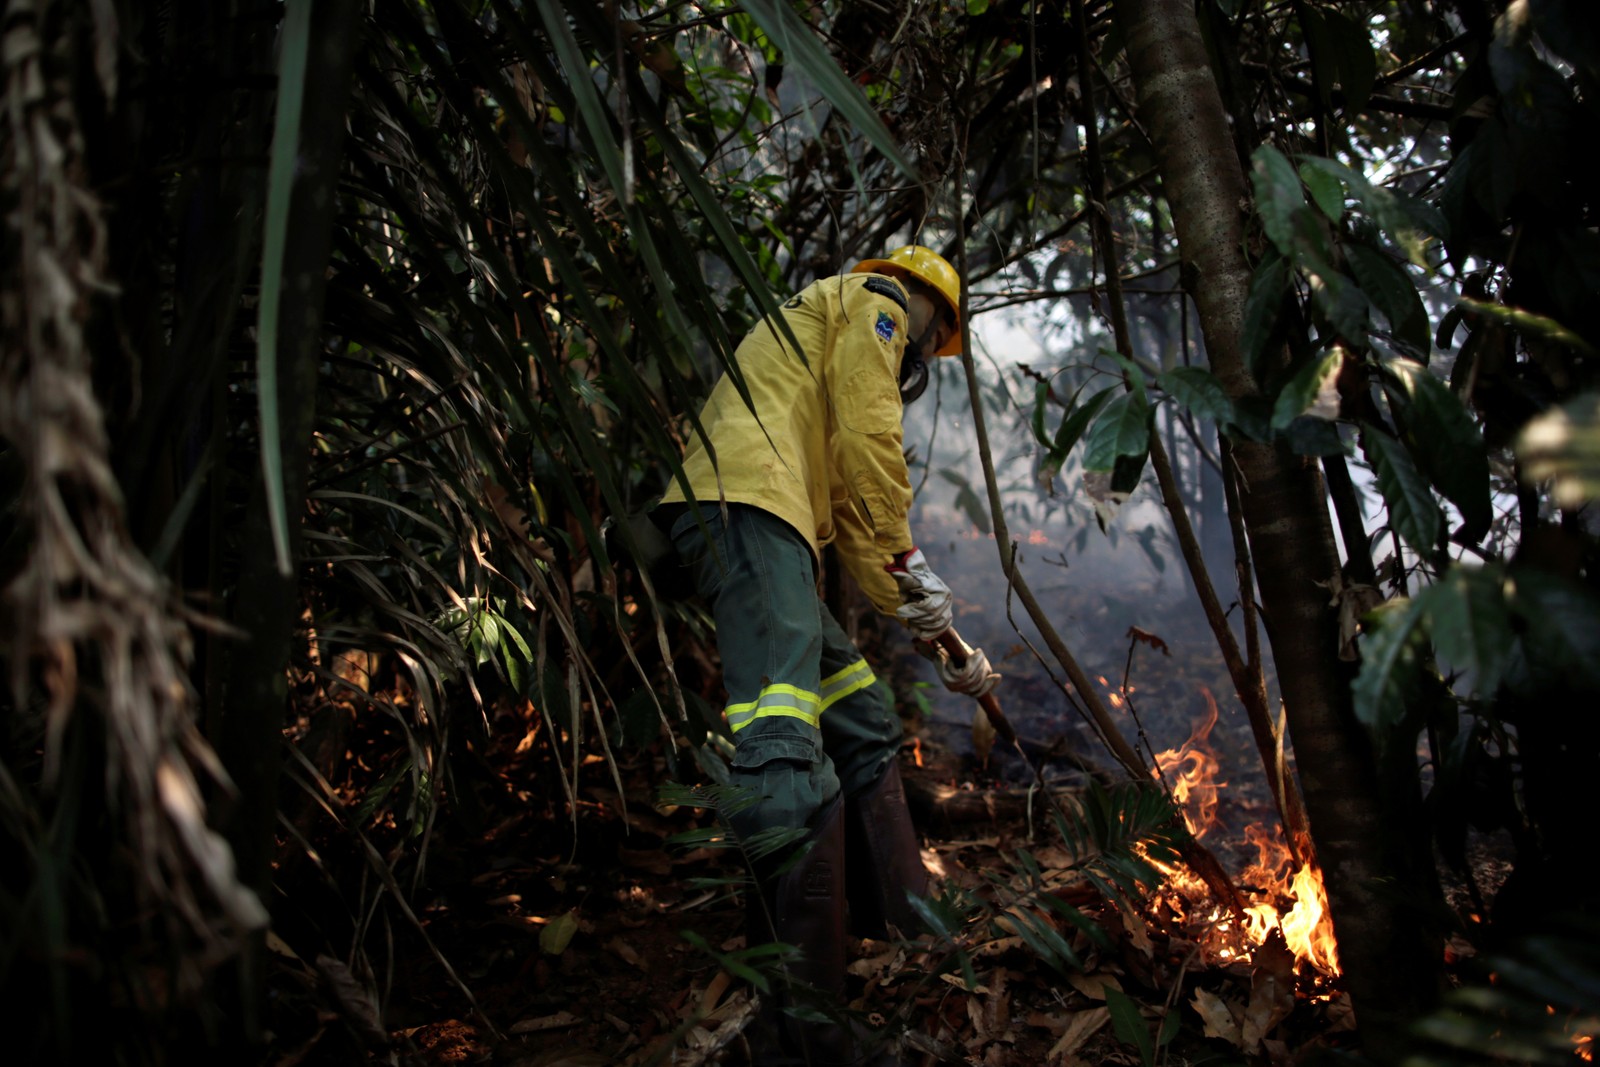 Membro da brigada de incêndio do Instituto Brasileiro do Meio Ambiente e dos Recursos Naturais Renováveis (Ibama) tenta controlar um incêndio em uma área da floresta amazônica, em Apuí, no AmazonasREUTERS